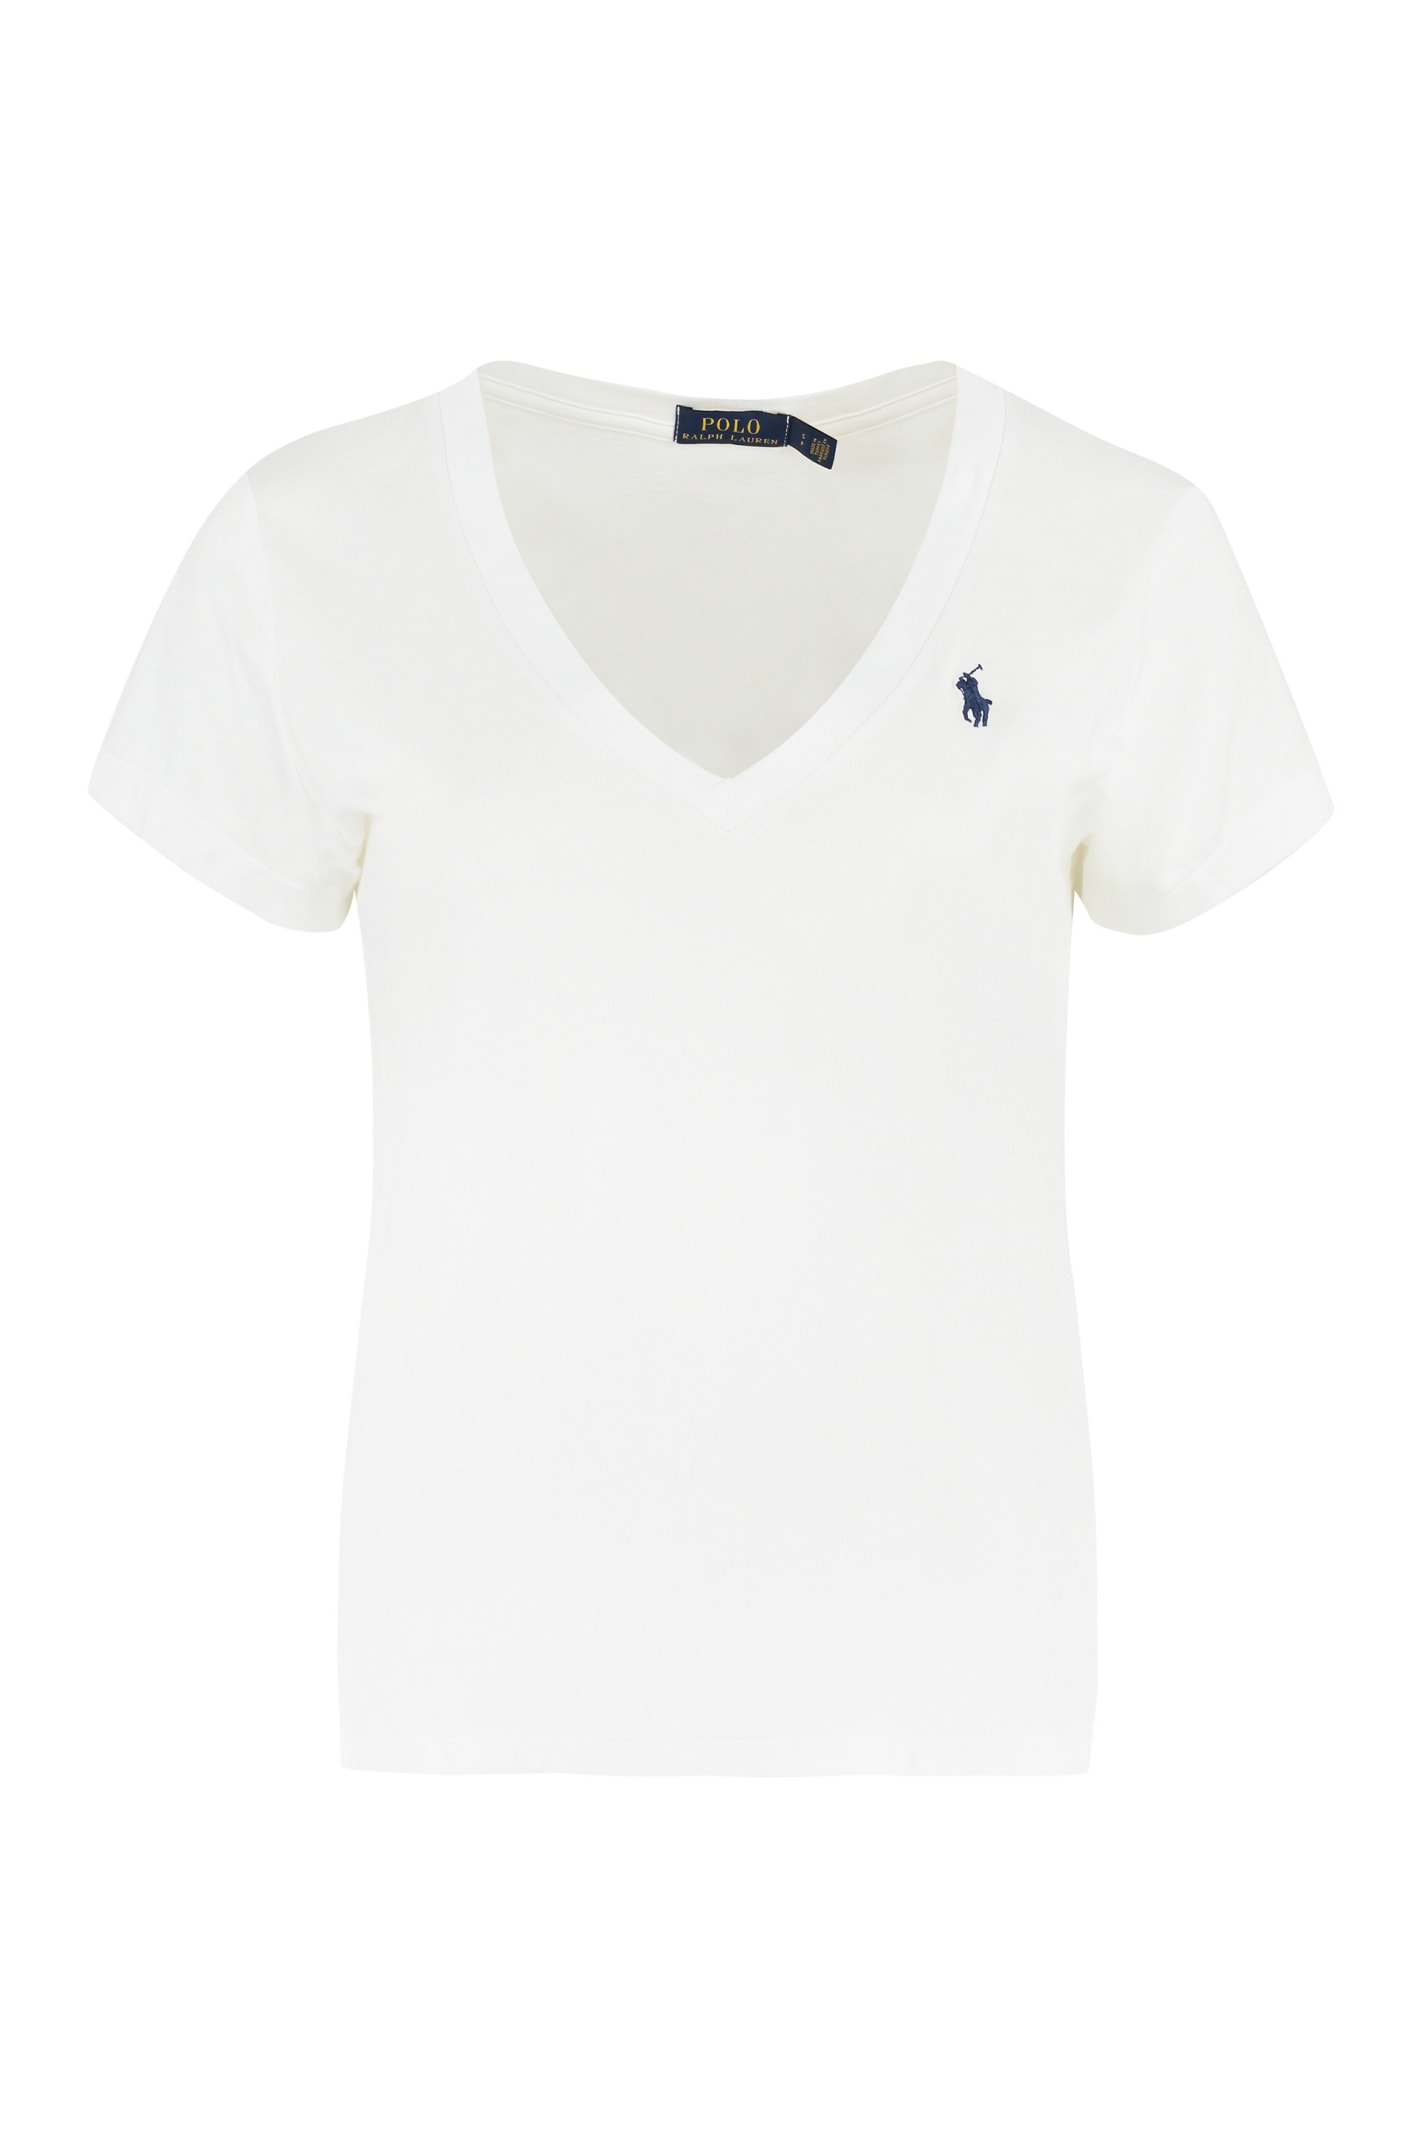 Ralph Lauren Logo Cotton T-shirt